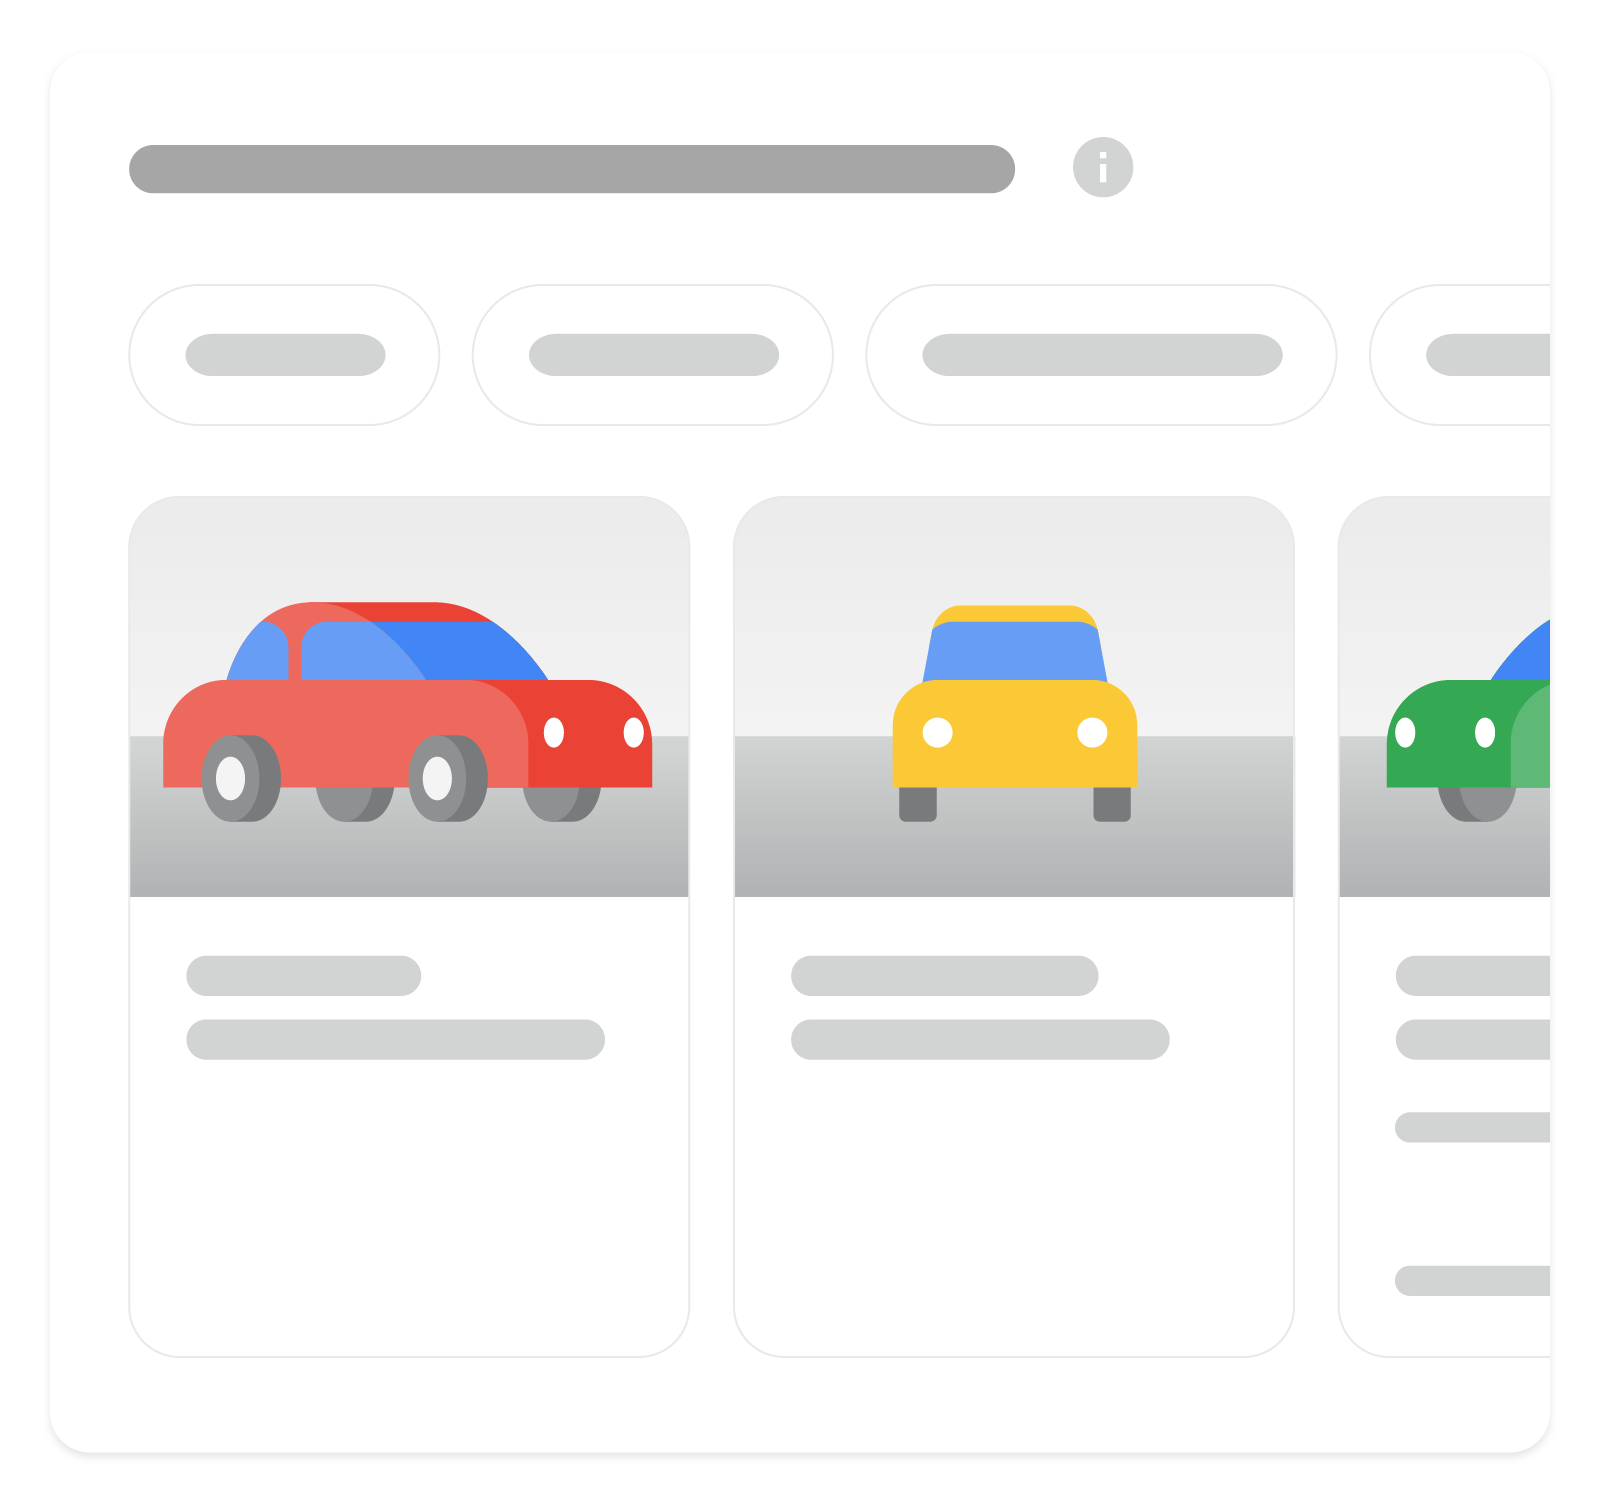 Obraz pokazujący, jak wyniki z elementami rozszerzonymi dotyczące informacji o pojazdach mogą być wyświetlane w wyszukiwarce Google